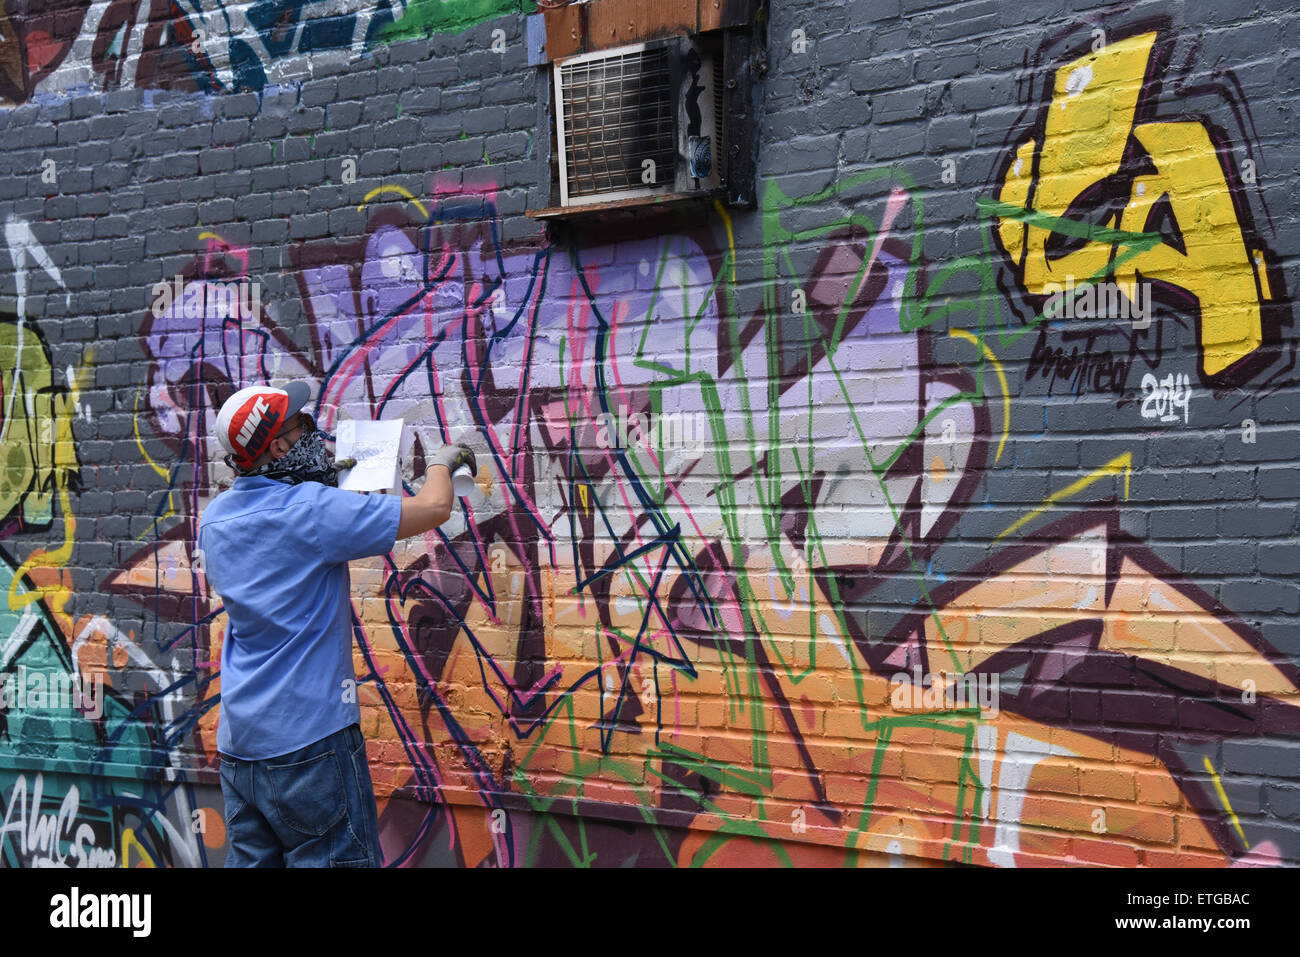 Montreal, Canadá: El mural es un festival de arte público internacional que atrae a artistas de todo el mundo. El festival pretende mural para celebrar la creatividad de la ciudad y democratizar el arte en un contexto de la calle.Mural Festival se celebrará en Montreal . Foto de stock